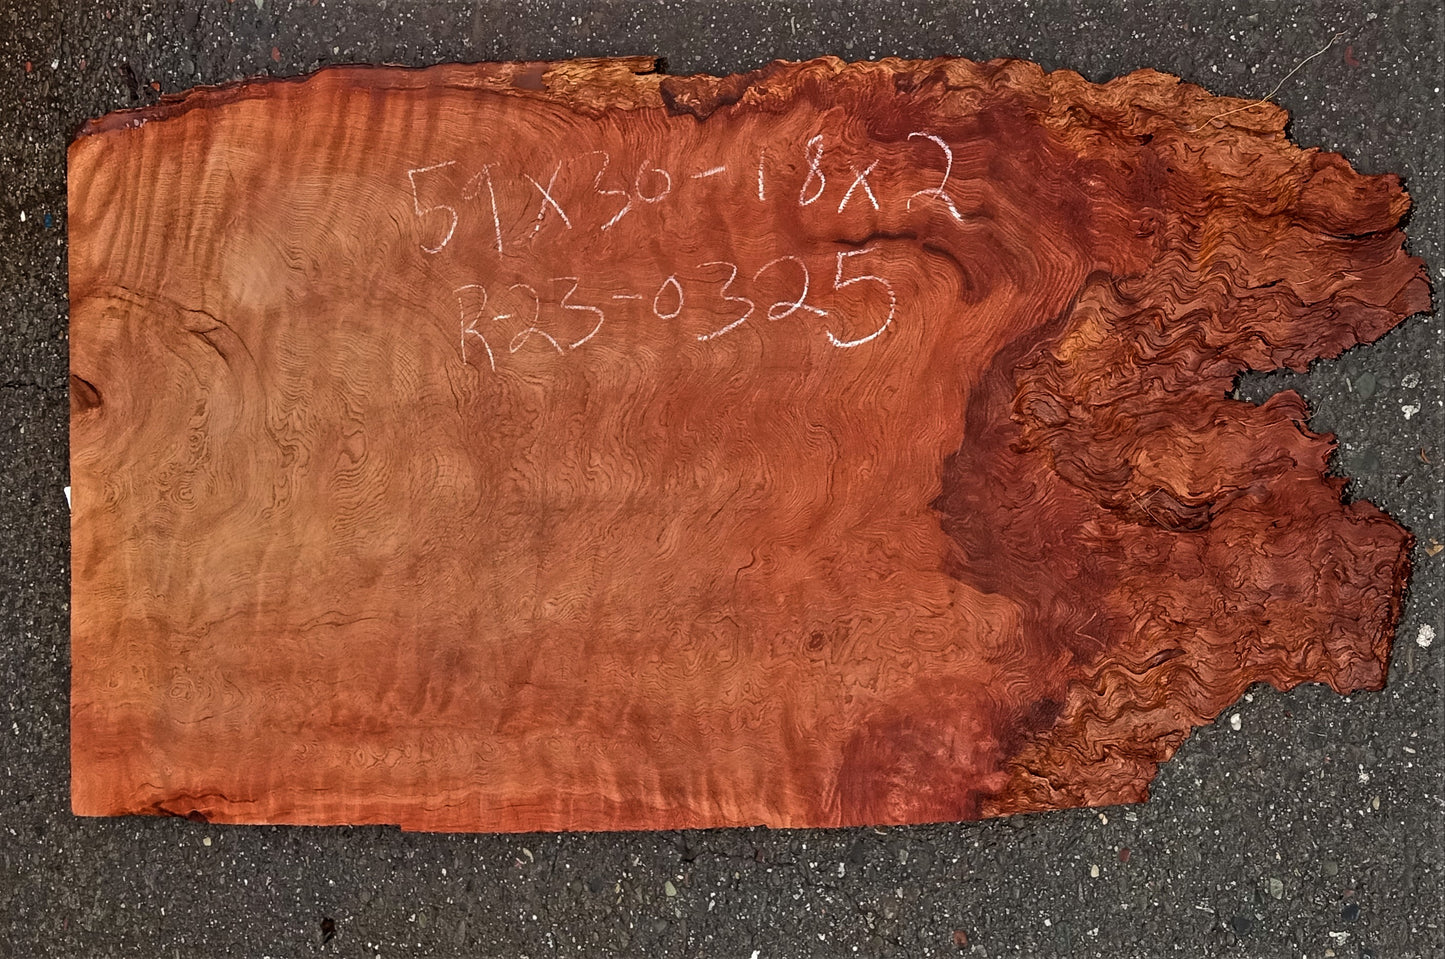 quilted Redwood slab | guitar billet | epoxy river table | DIY crafts | r23-0325